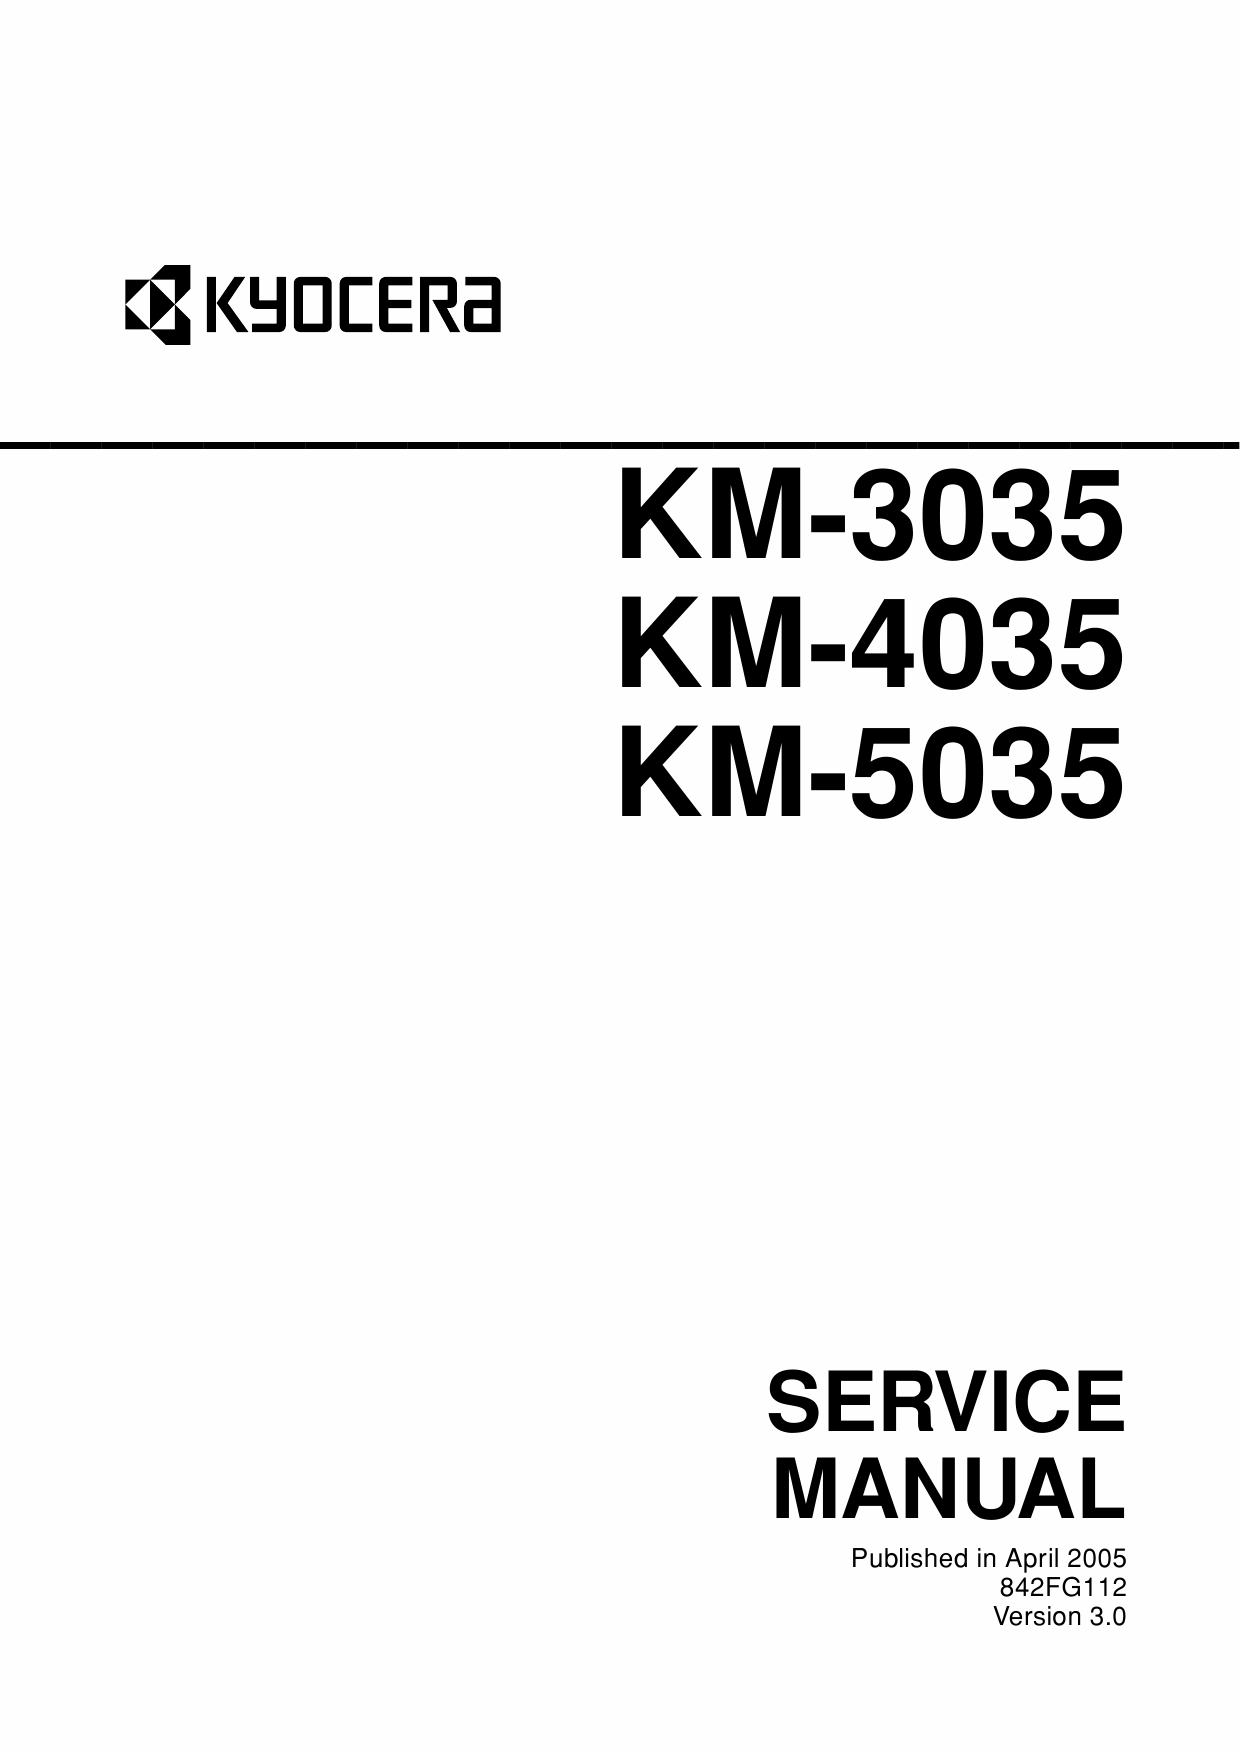 KYOCERA Copier KM-3035 4035 5035 Service Manual-1